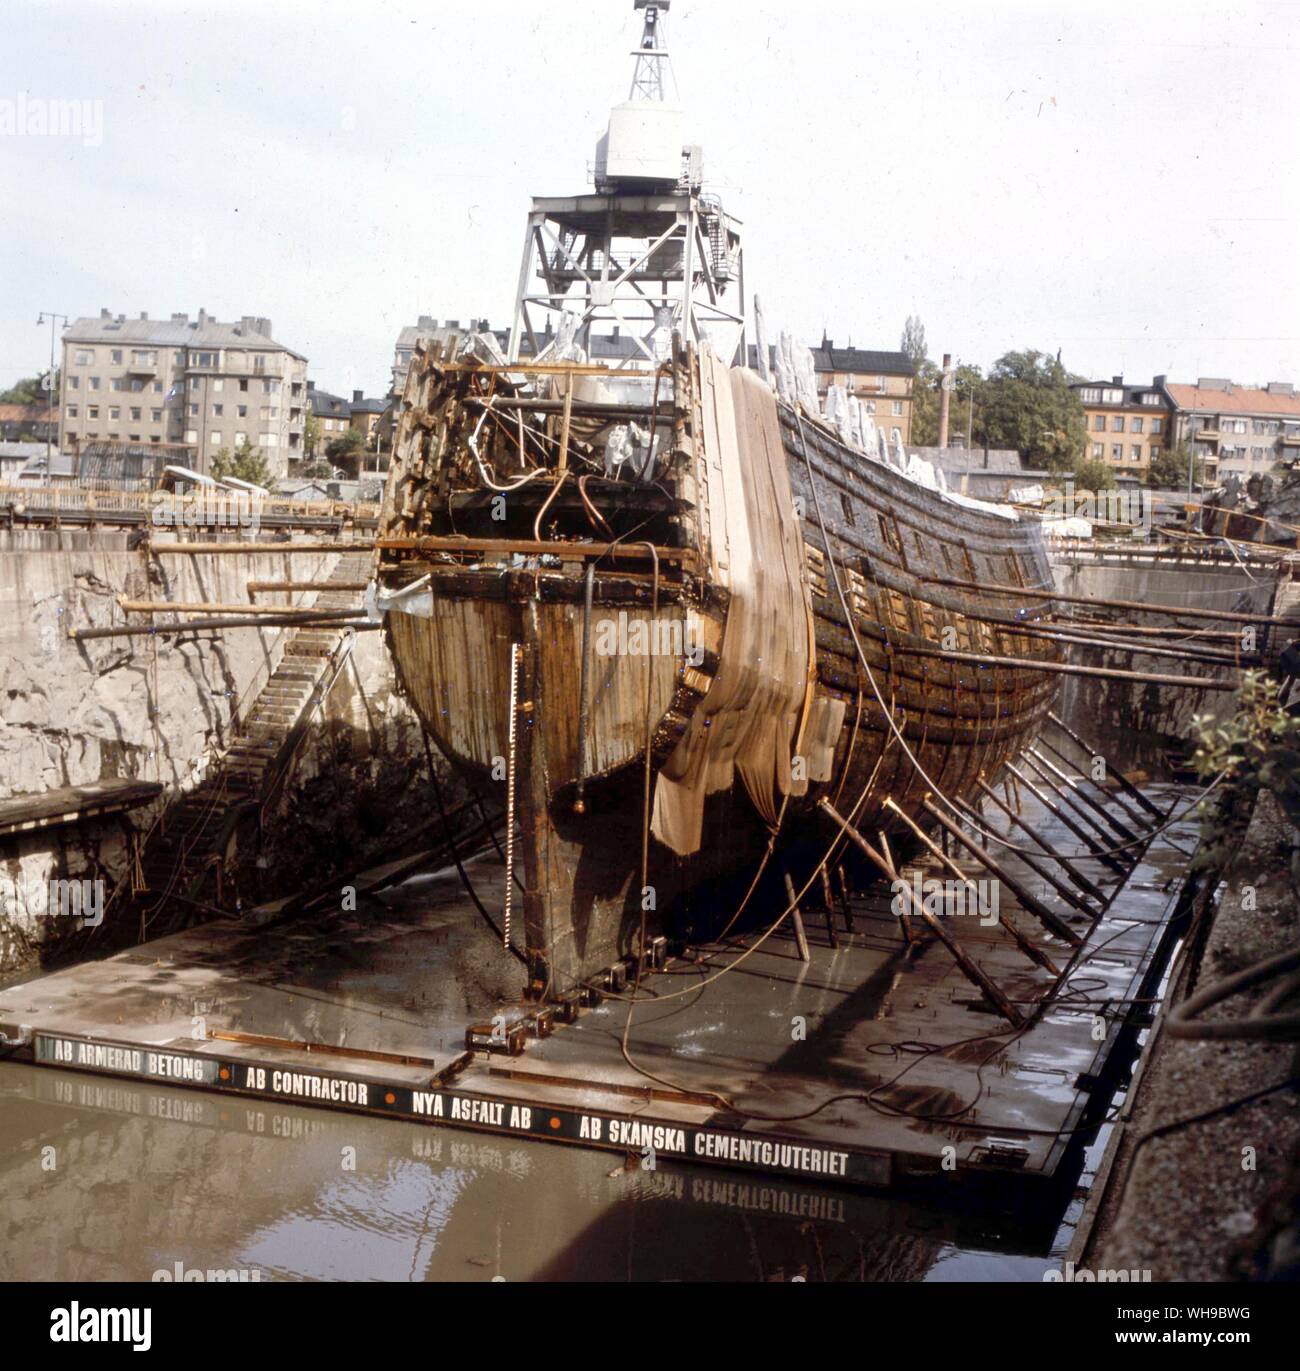 Svezia: fighting ship, circa 1420 (XV secolo). La Wasa nel bacino di carenaggio, Wasaveret Museum di Stoccolma. Incendiate e affondato nel 1628. Foto Stock